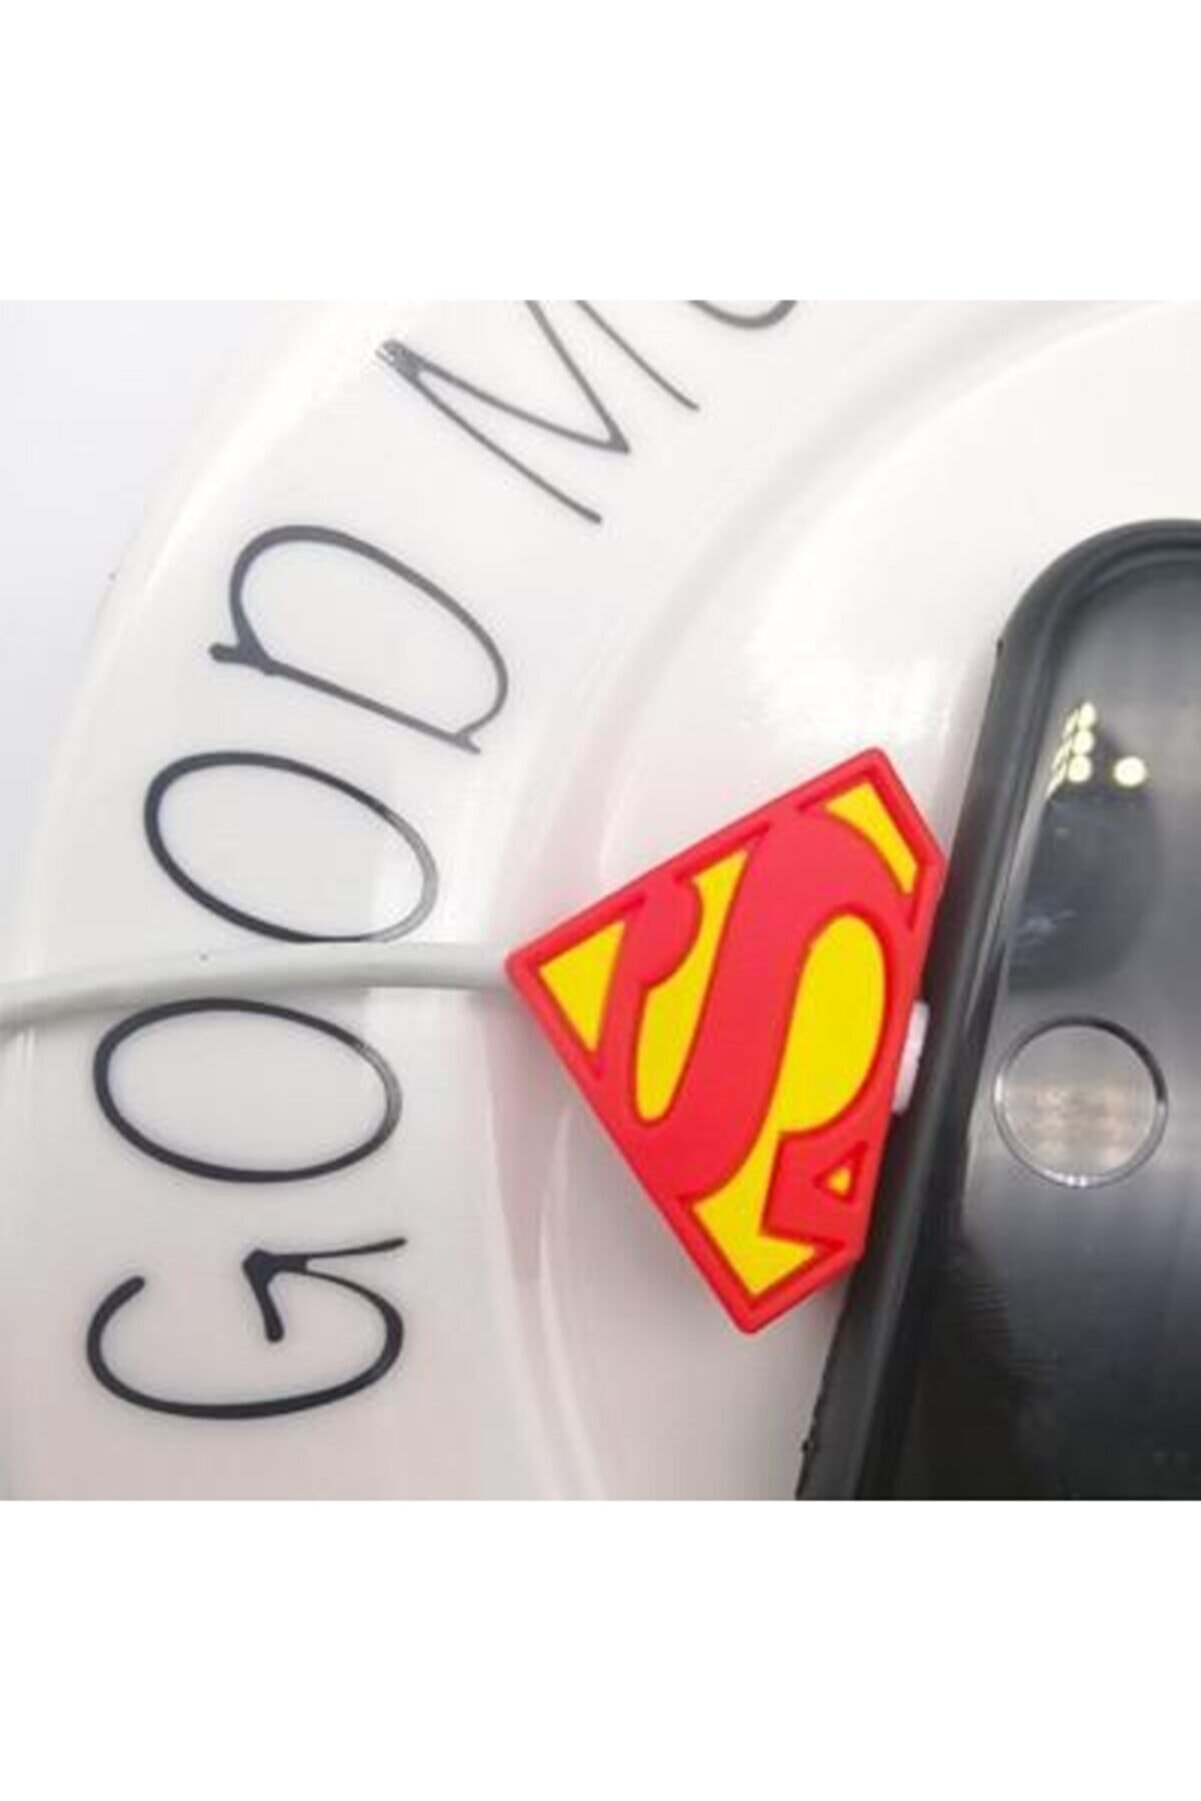 MY MÜRDÜM Sevimli Silikon Kablo Koruyucu Superman